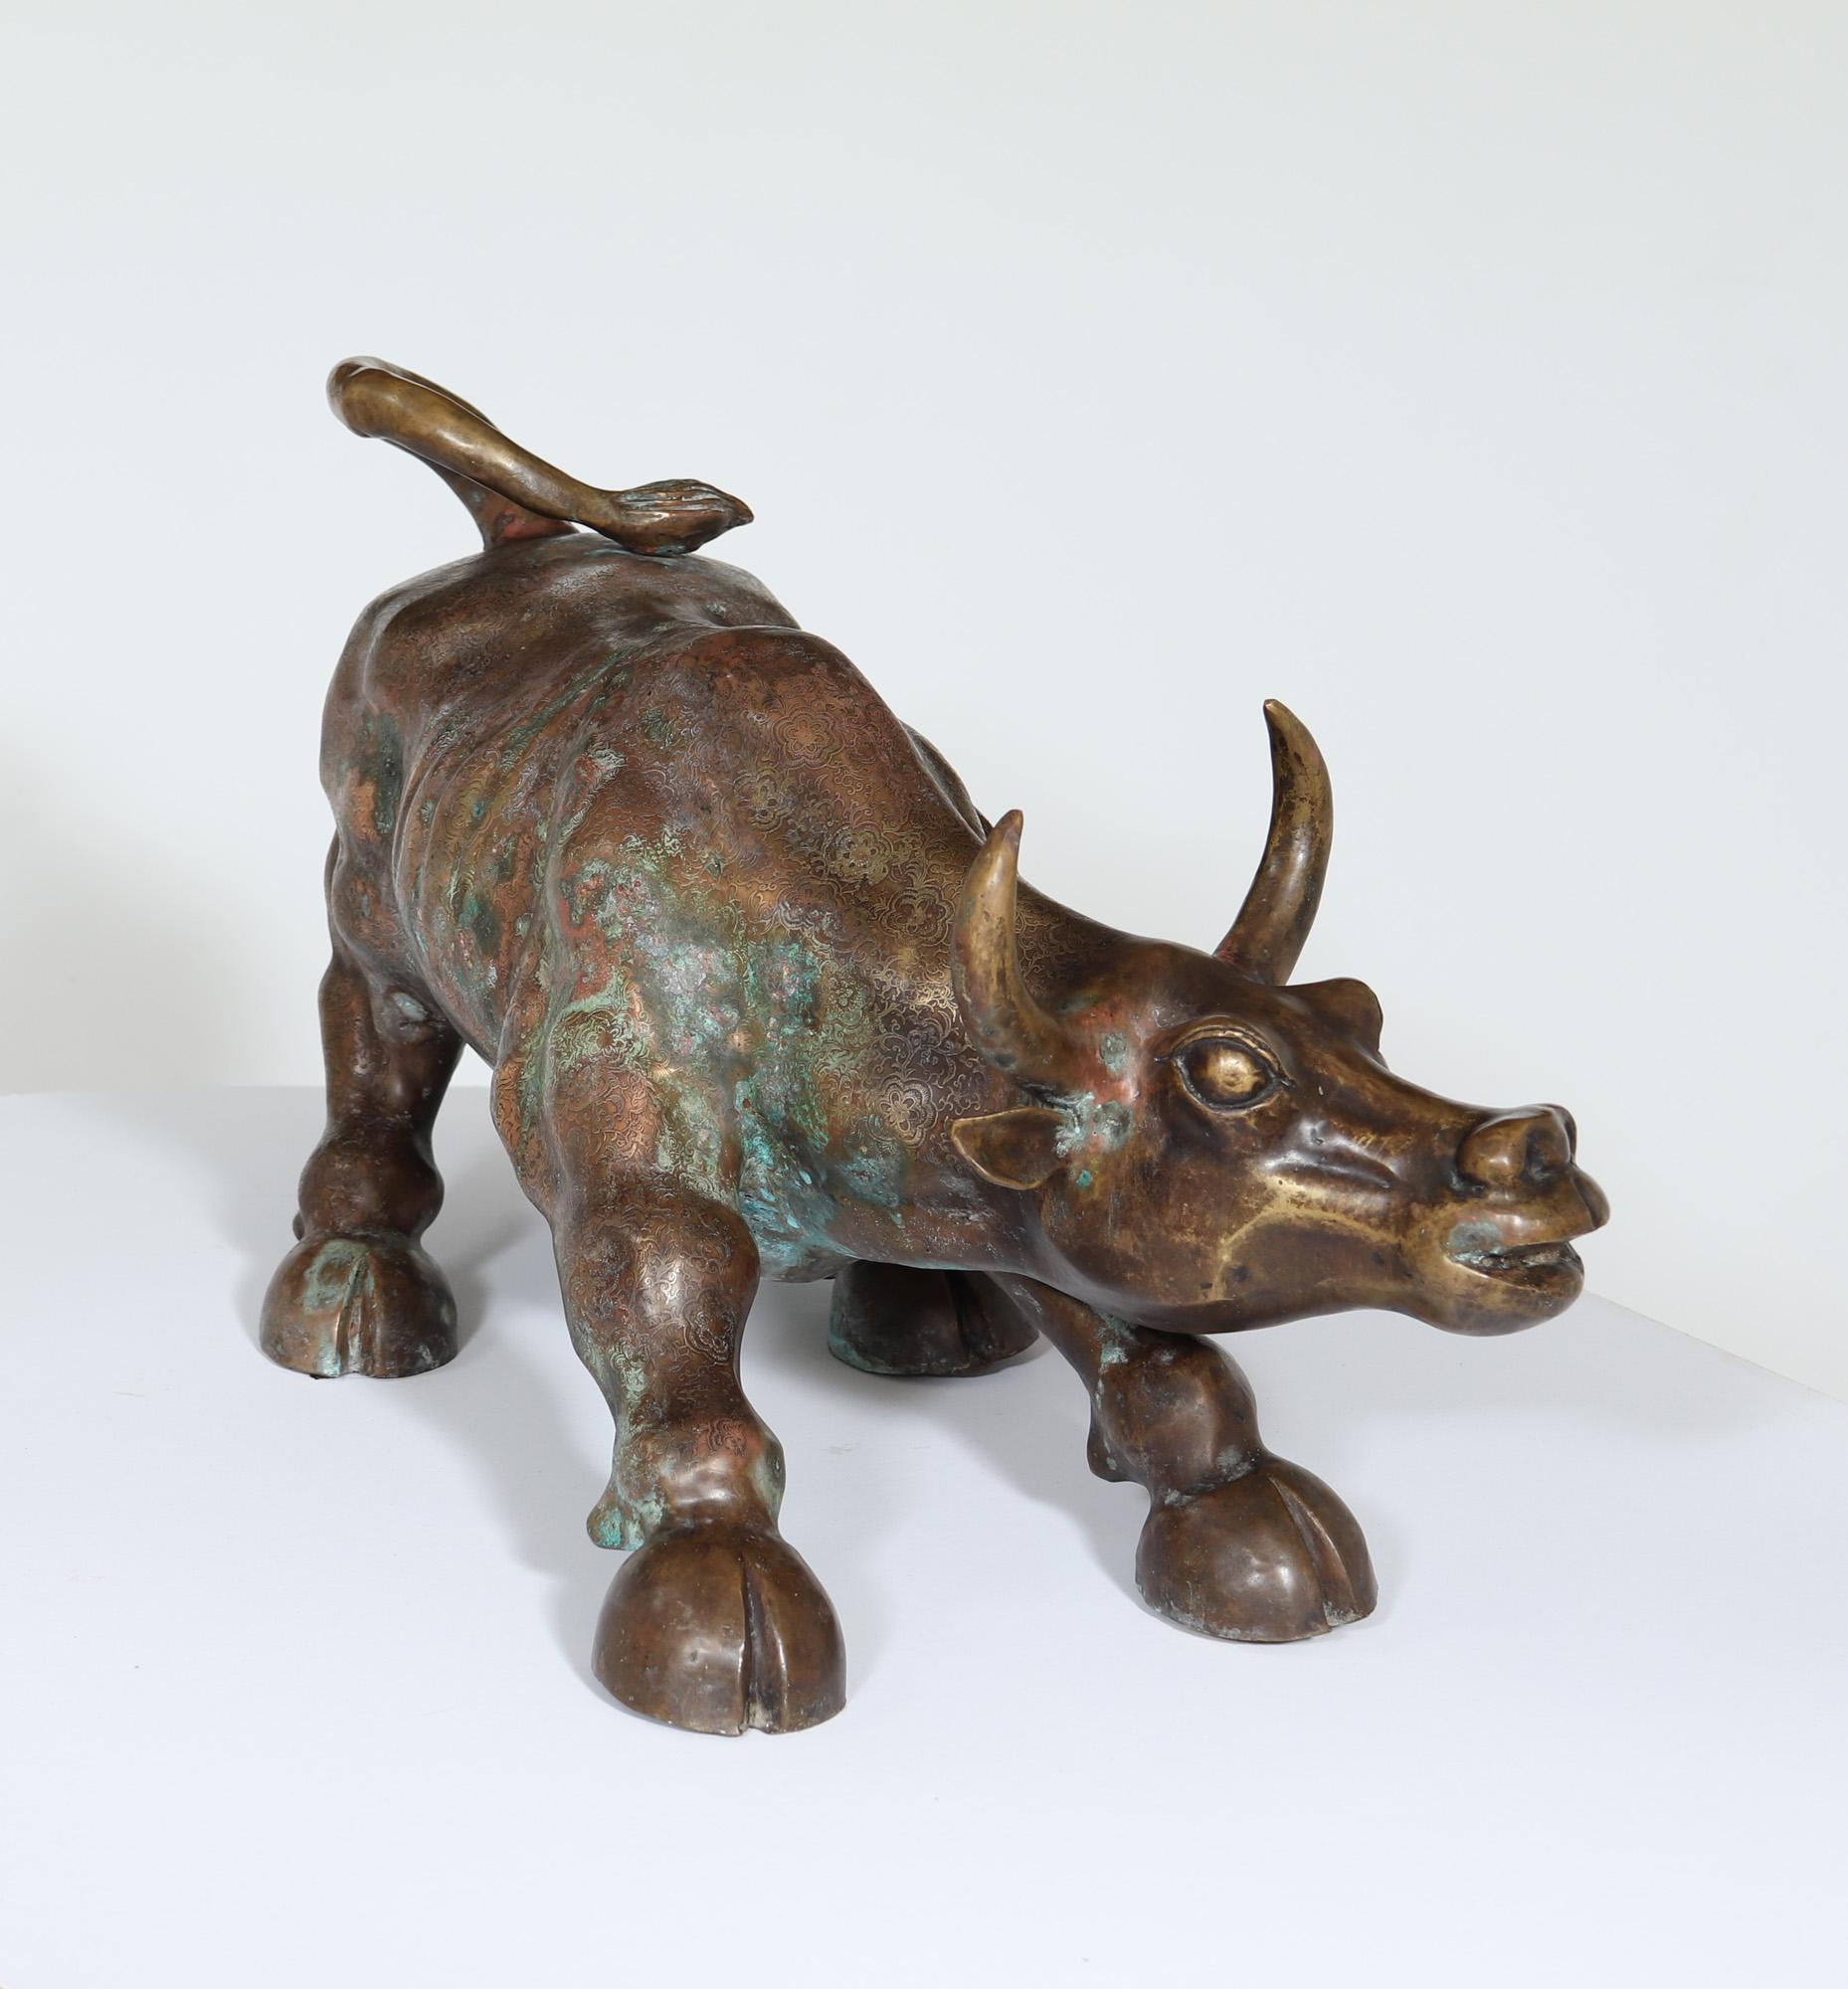 SCULPTURE EN BRONZE D'UN TAUREAU EN TRAIN DE CHARGER
une représentation impressionnante d'un taureau en train de charger, produite en France dans les années 1960, avec des motifs détaillés sur le bronze et une belle patine et couleur.